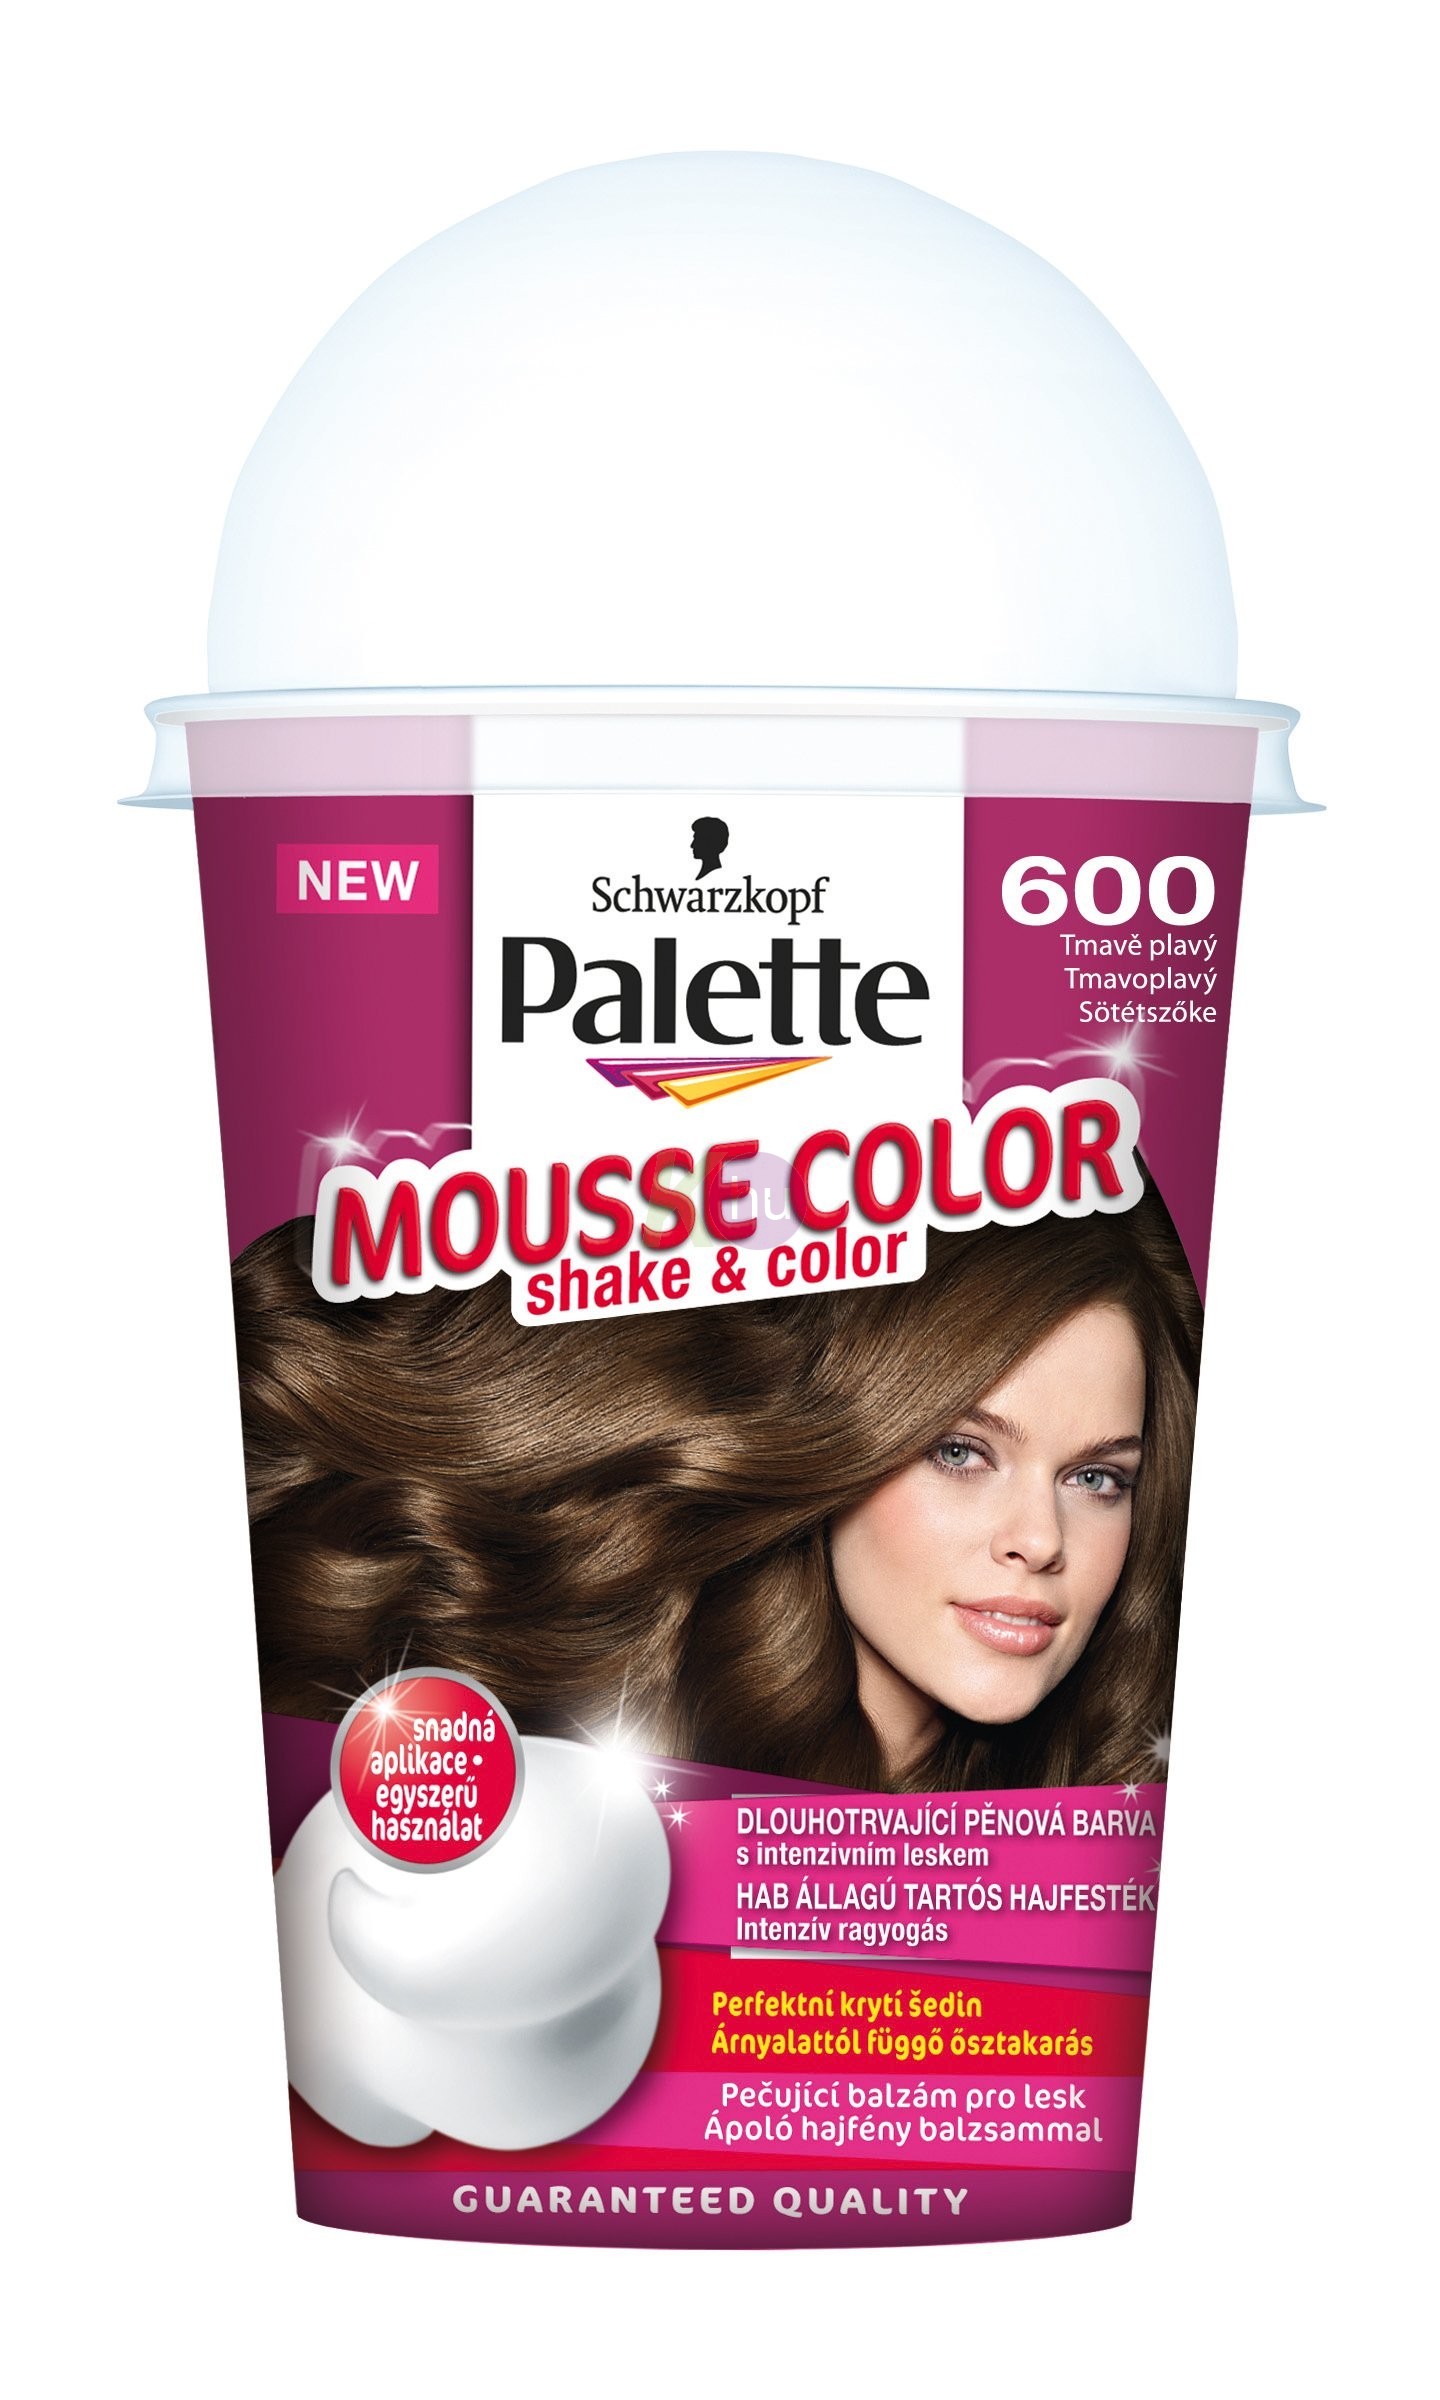 Palette Mousse Color 600 sötétszőke 13100872